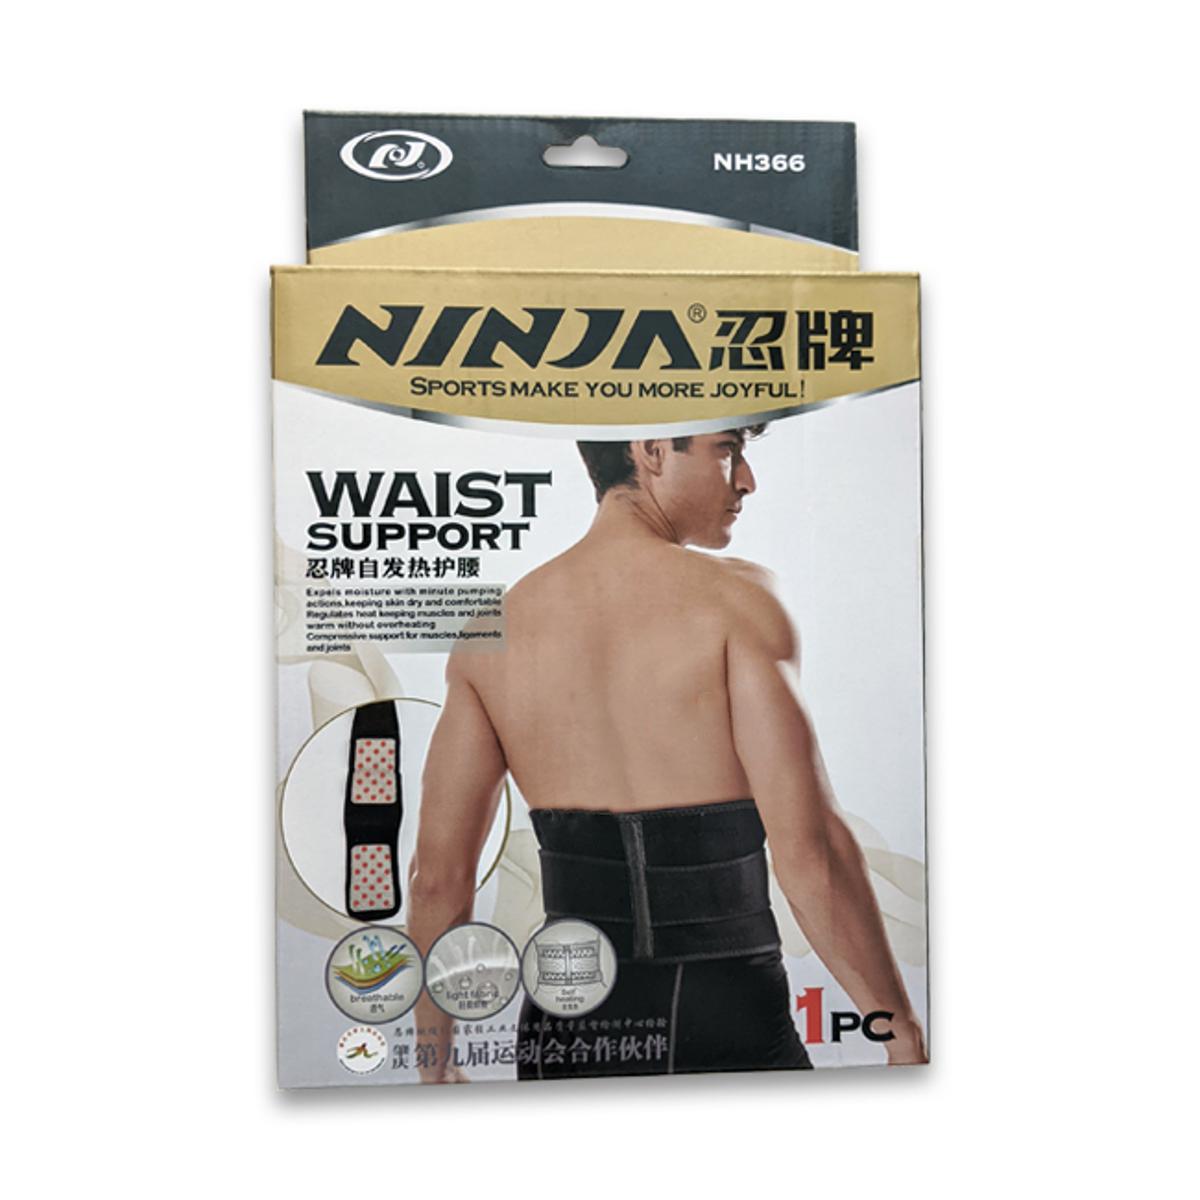 Waist support belt - Ninja NH366